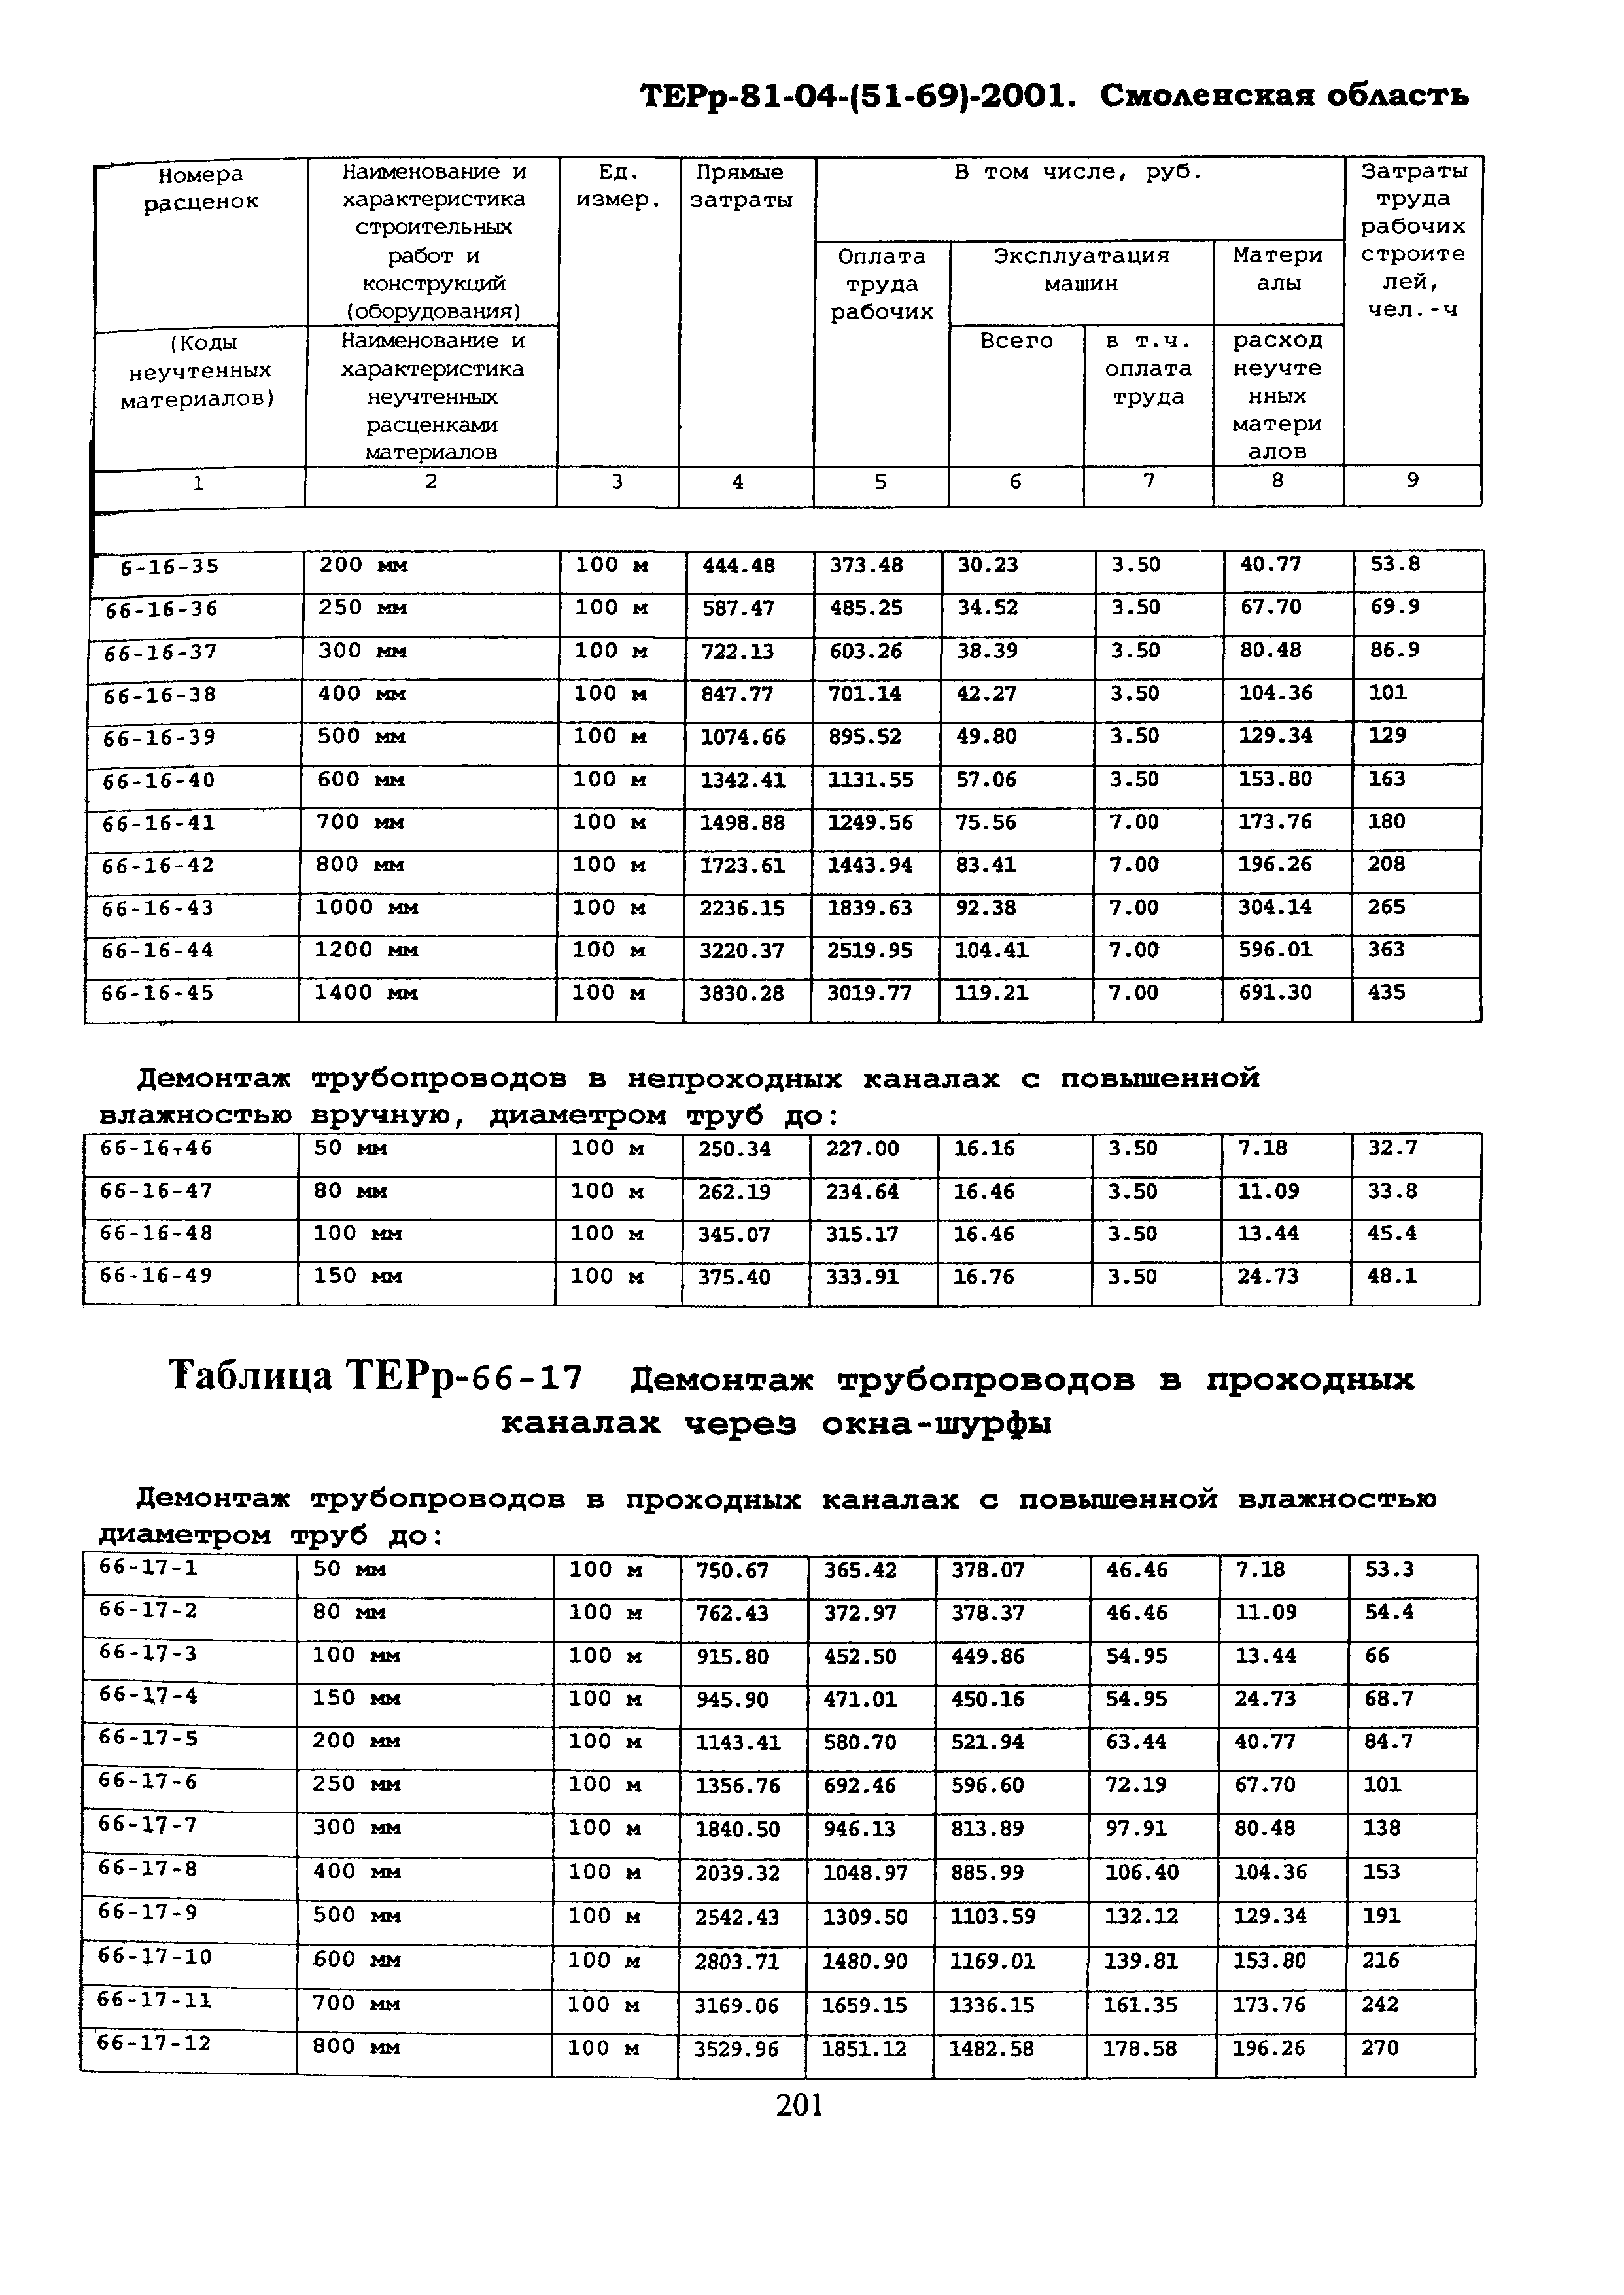 ТЕРр Смоленской области 2001-66